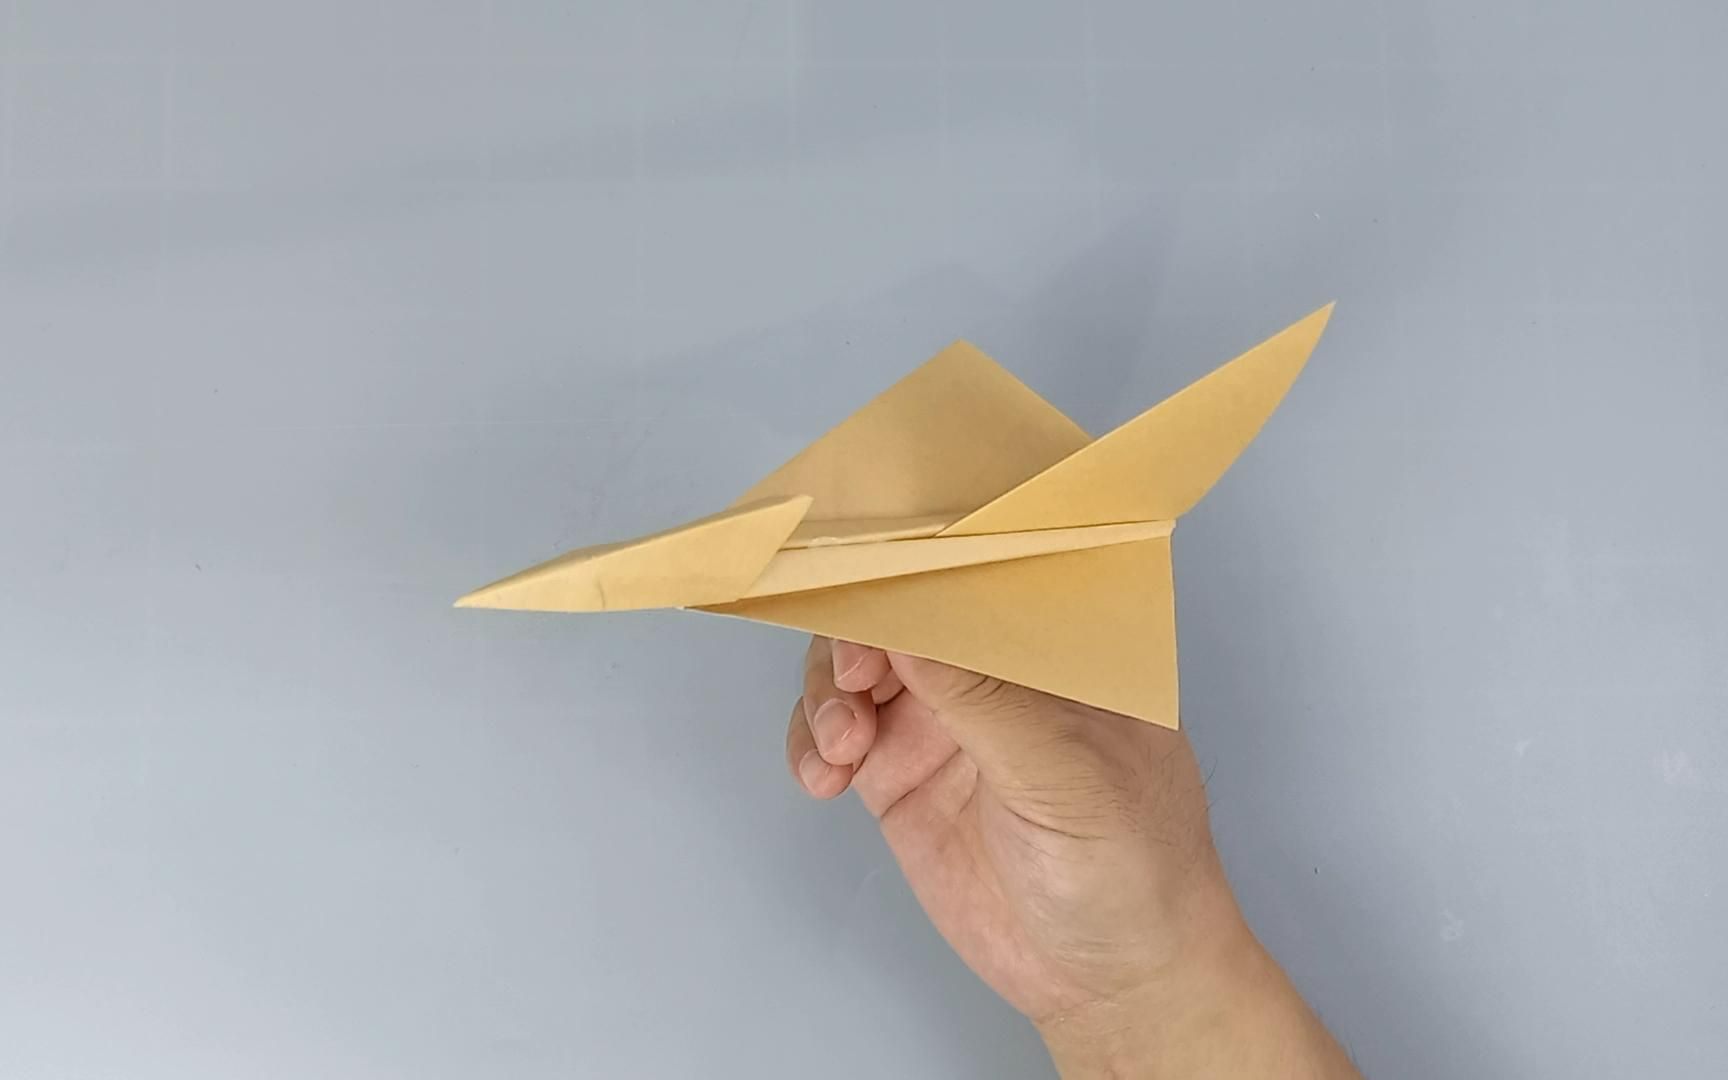 仿生纸飞机像鸟一样飞图片